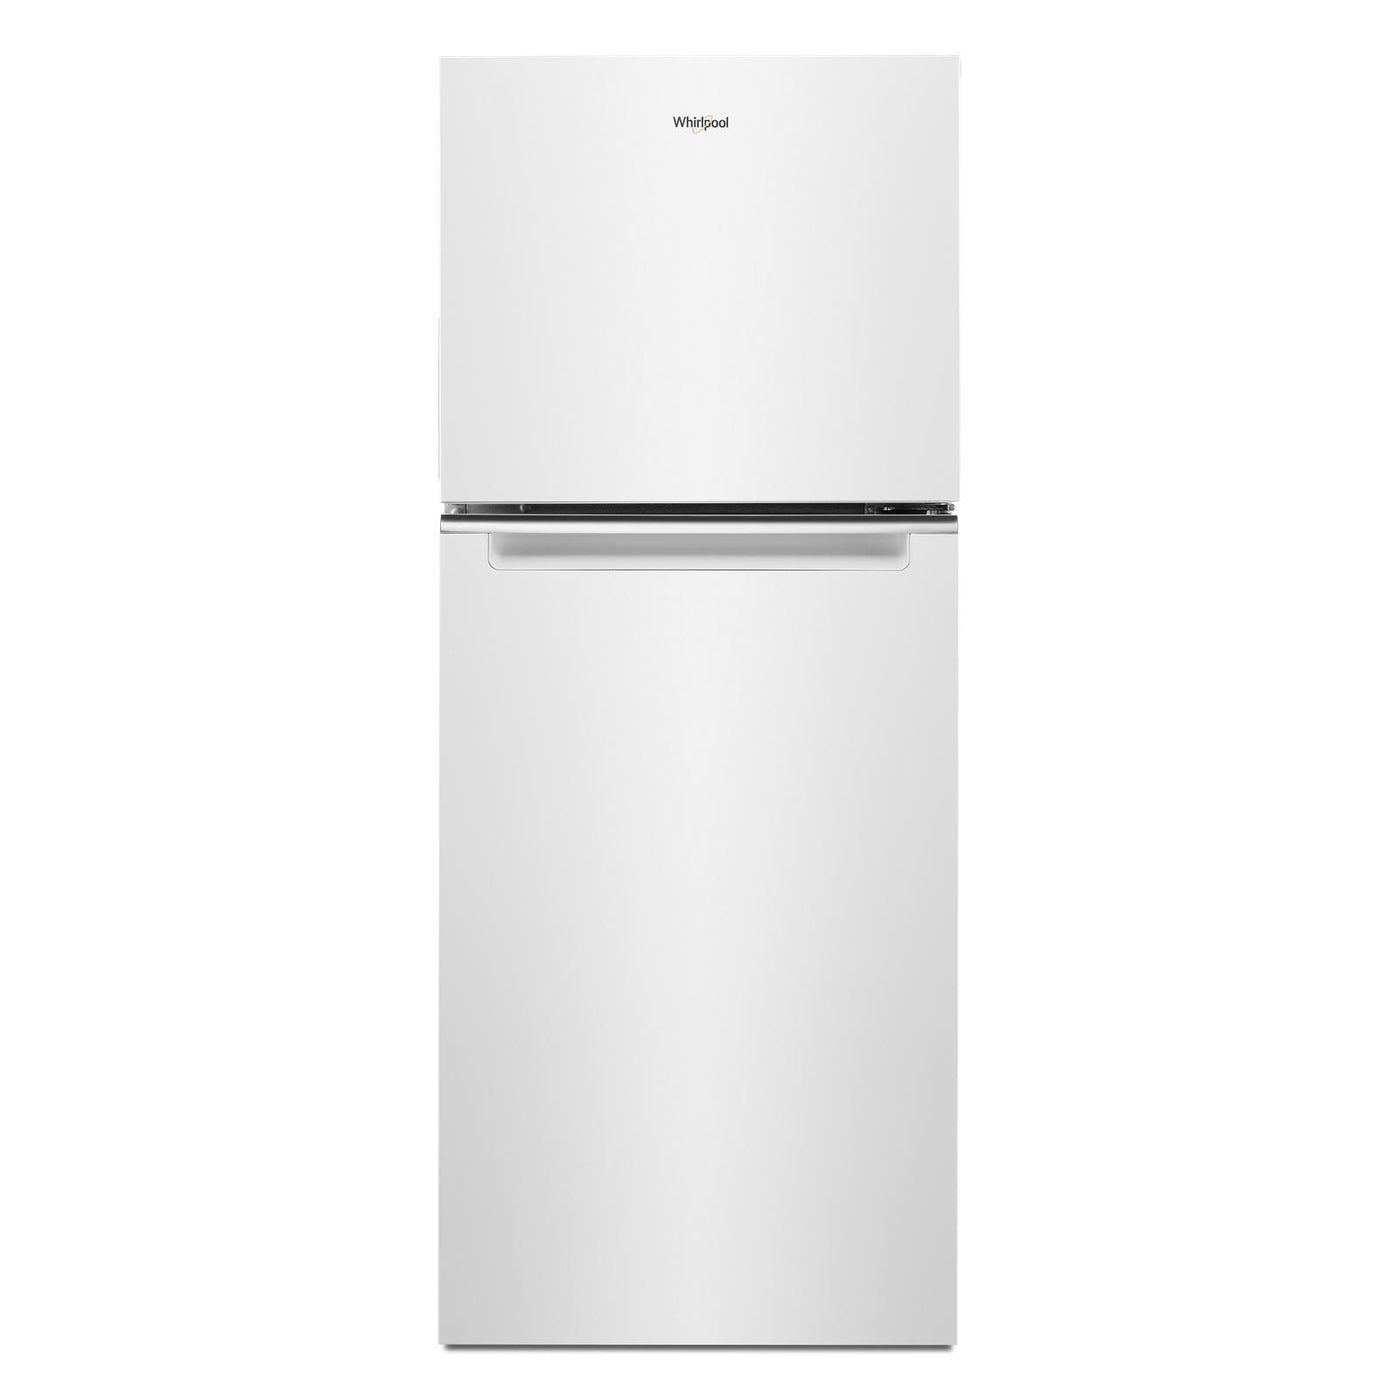 Whirlpool White Top Freezer Refrigerator (11.6 Cu.Ft.) - WRT312CZJW